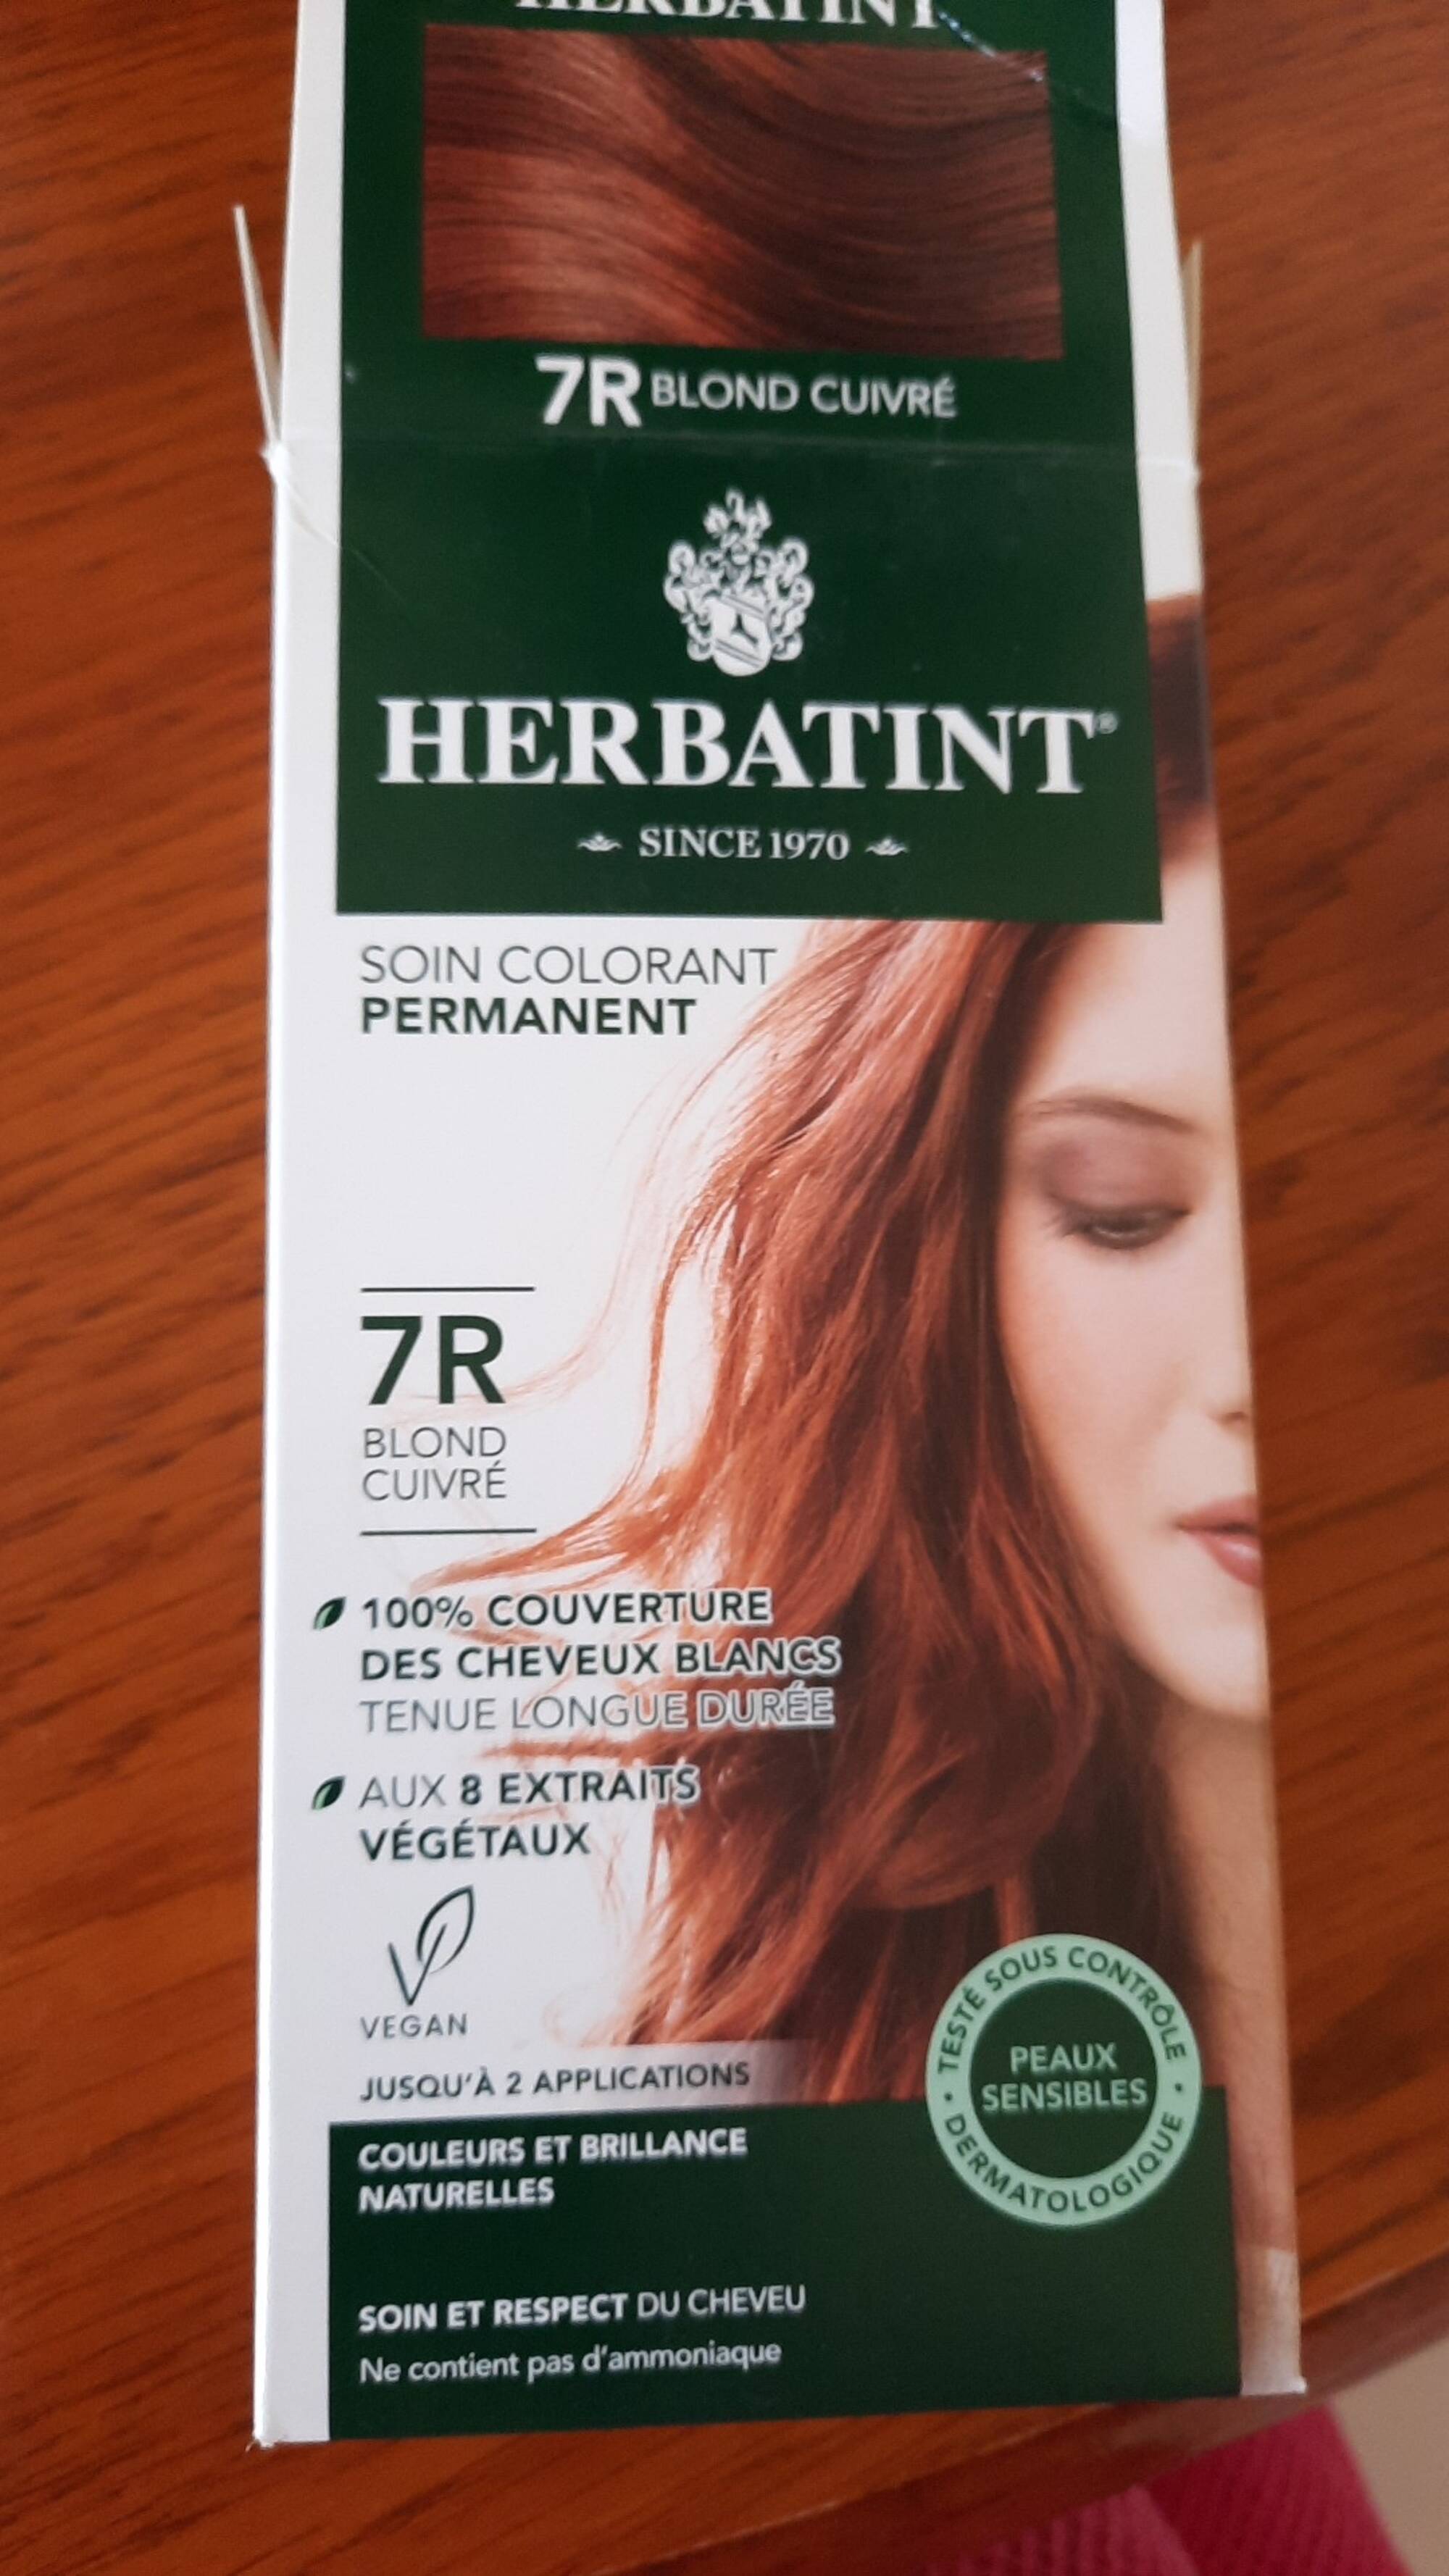 HERBATINT - Soin colorant permanent 7R blond cuivré